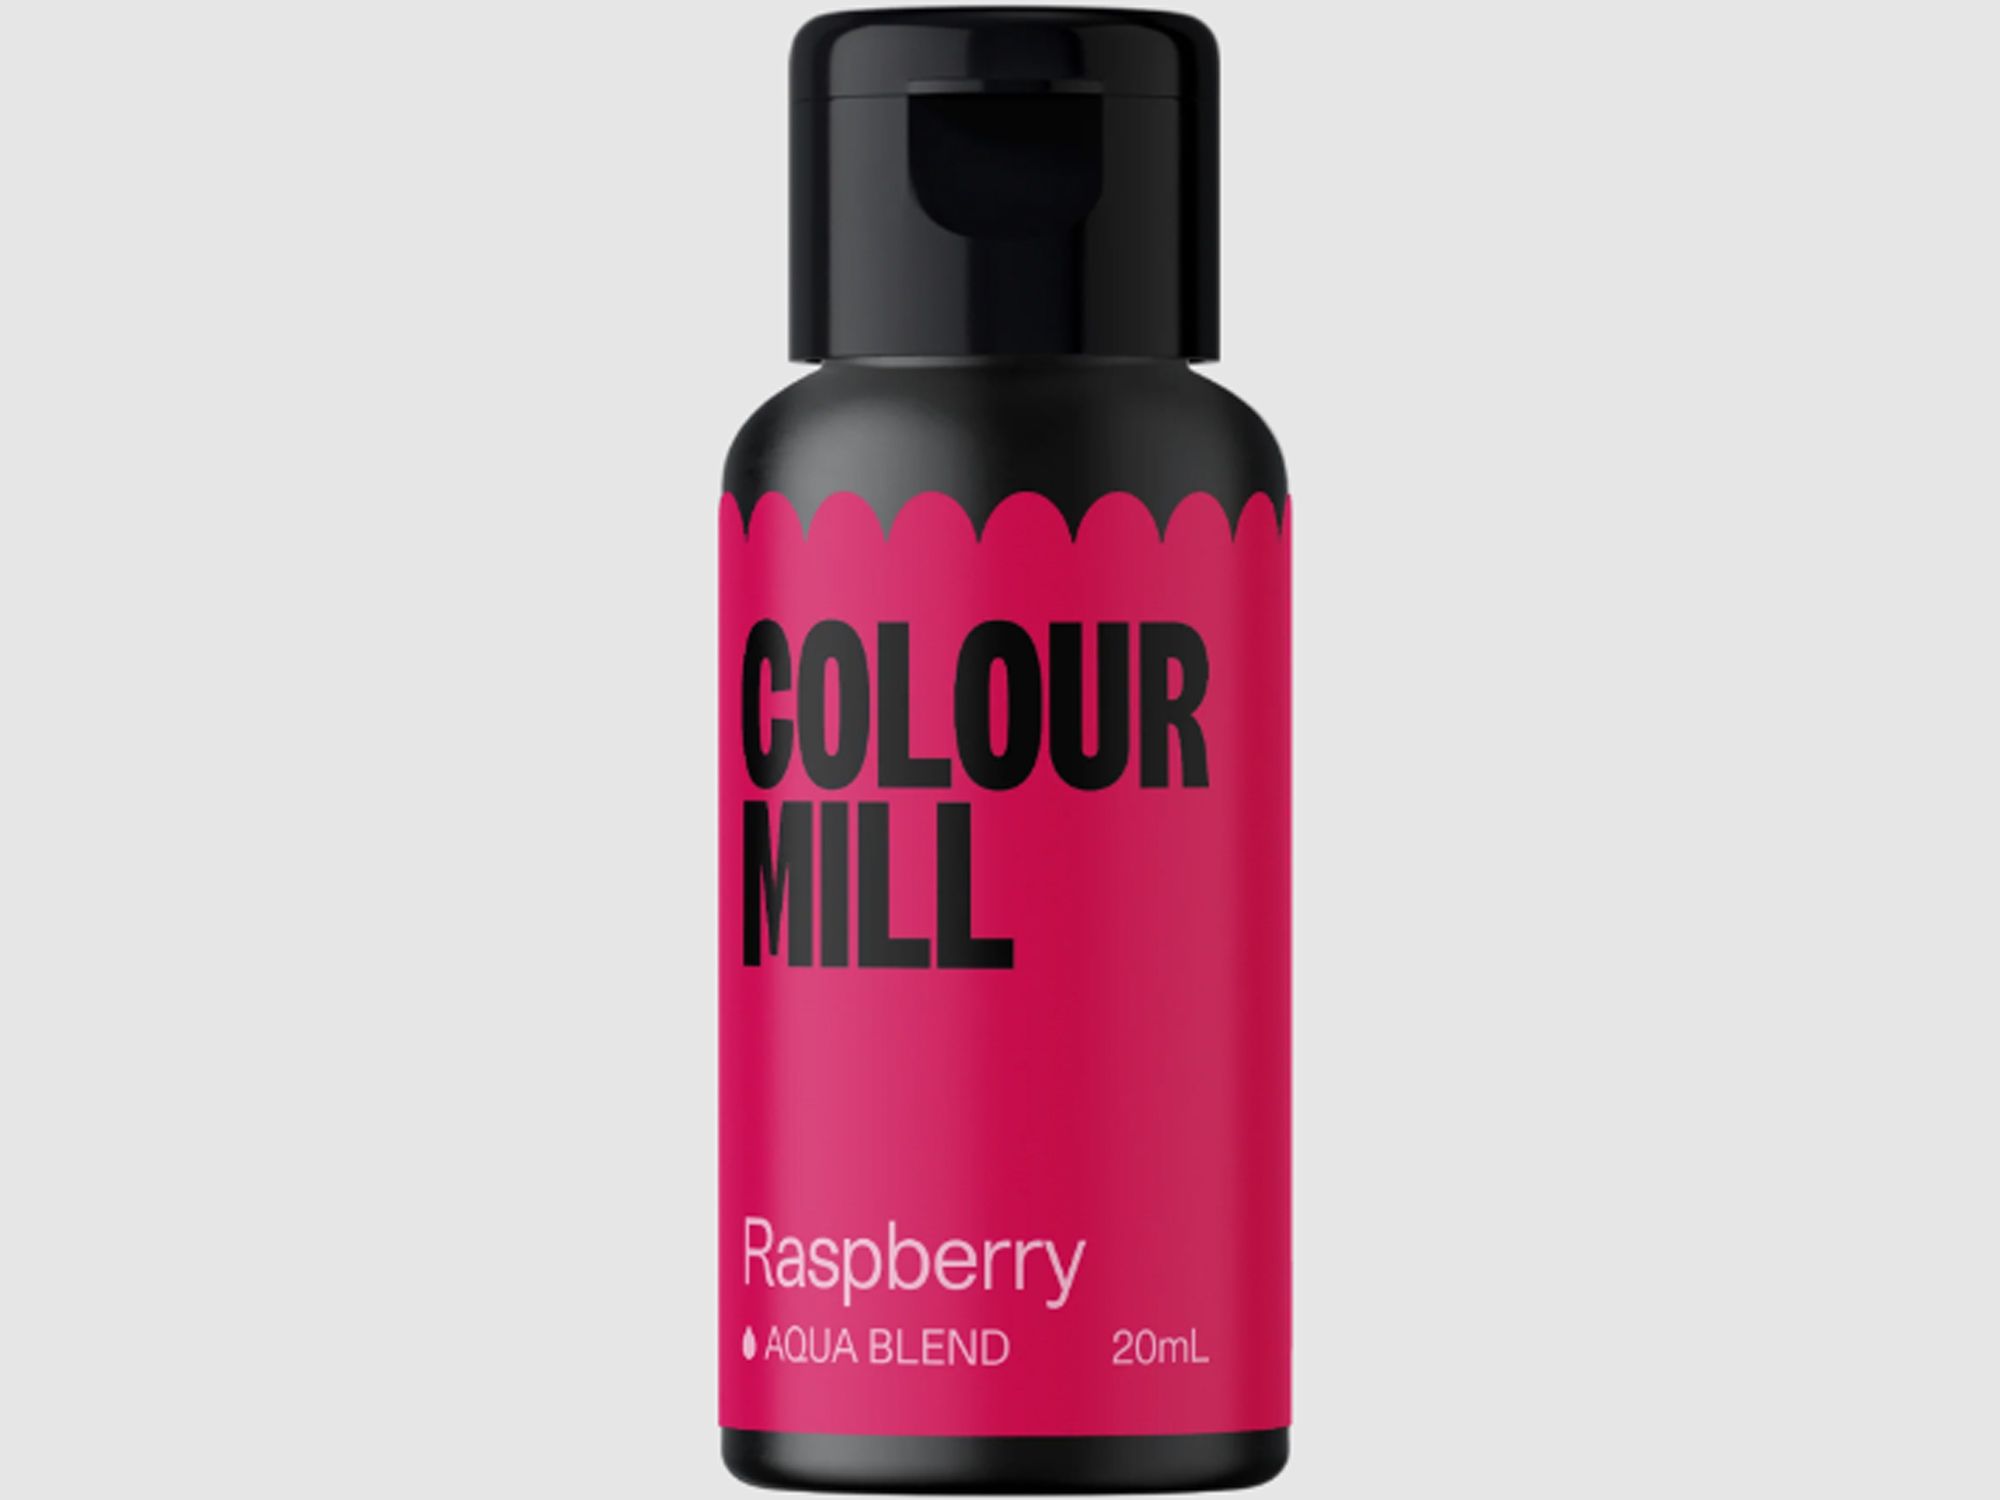 Colour Mill Raspberry (Aqua Blend) 20ml